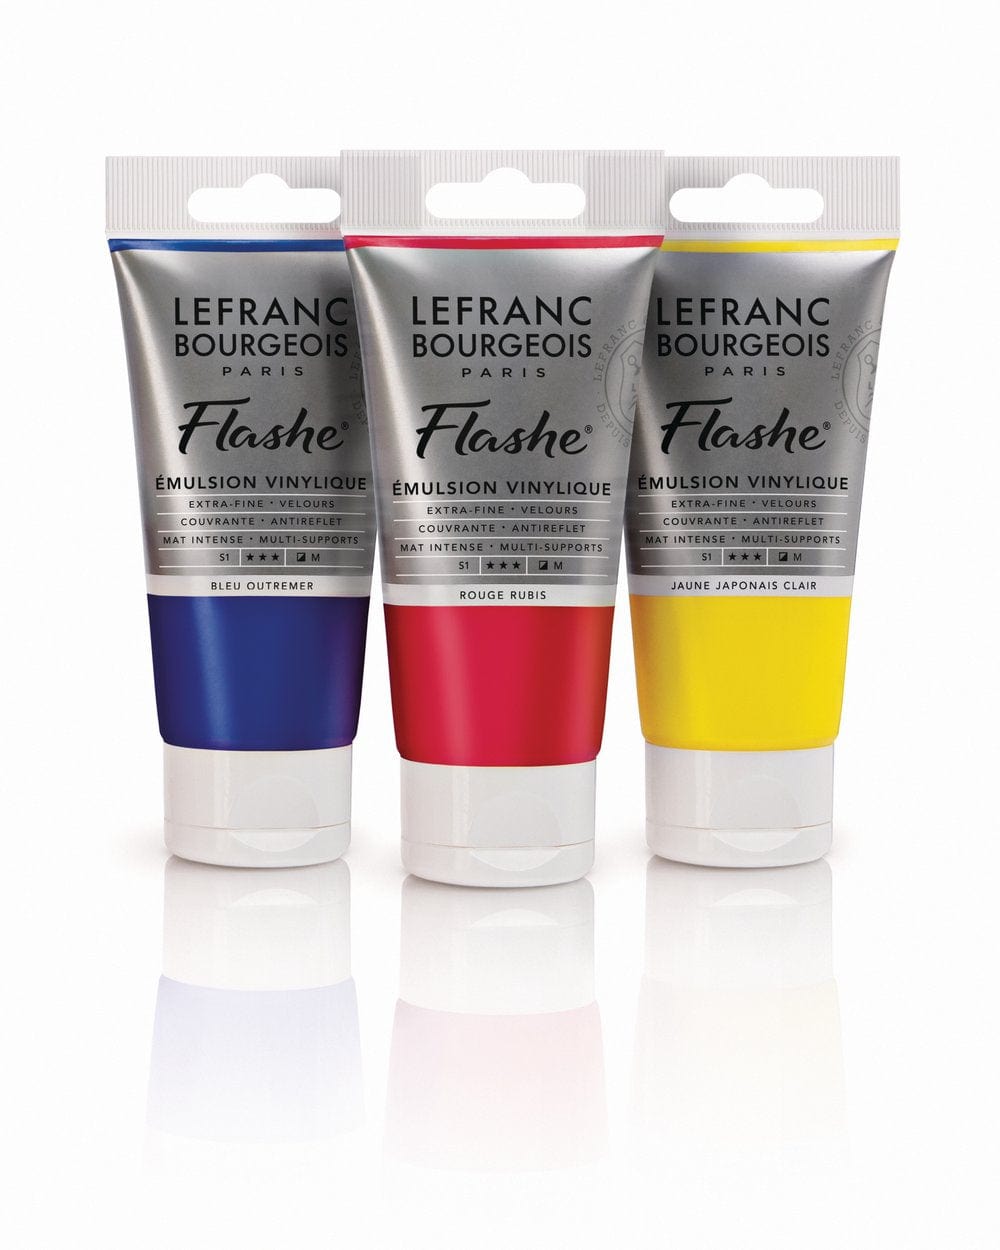 LEFRANC & BOURGEOISE FLASHE ACRYLIC Flashe - Vinyl Emulsion Paint - Individual 80mL Tubes - Series 1